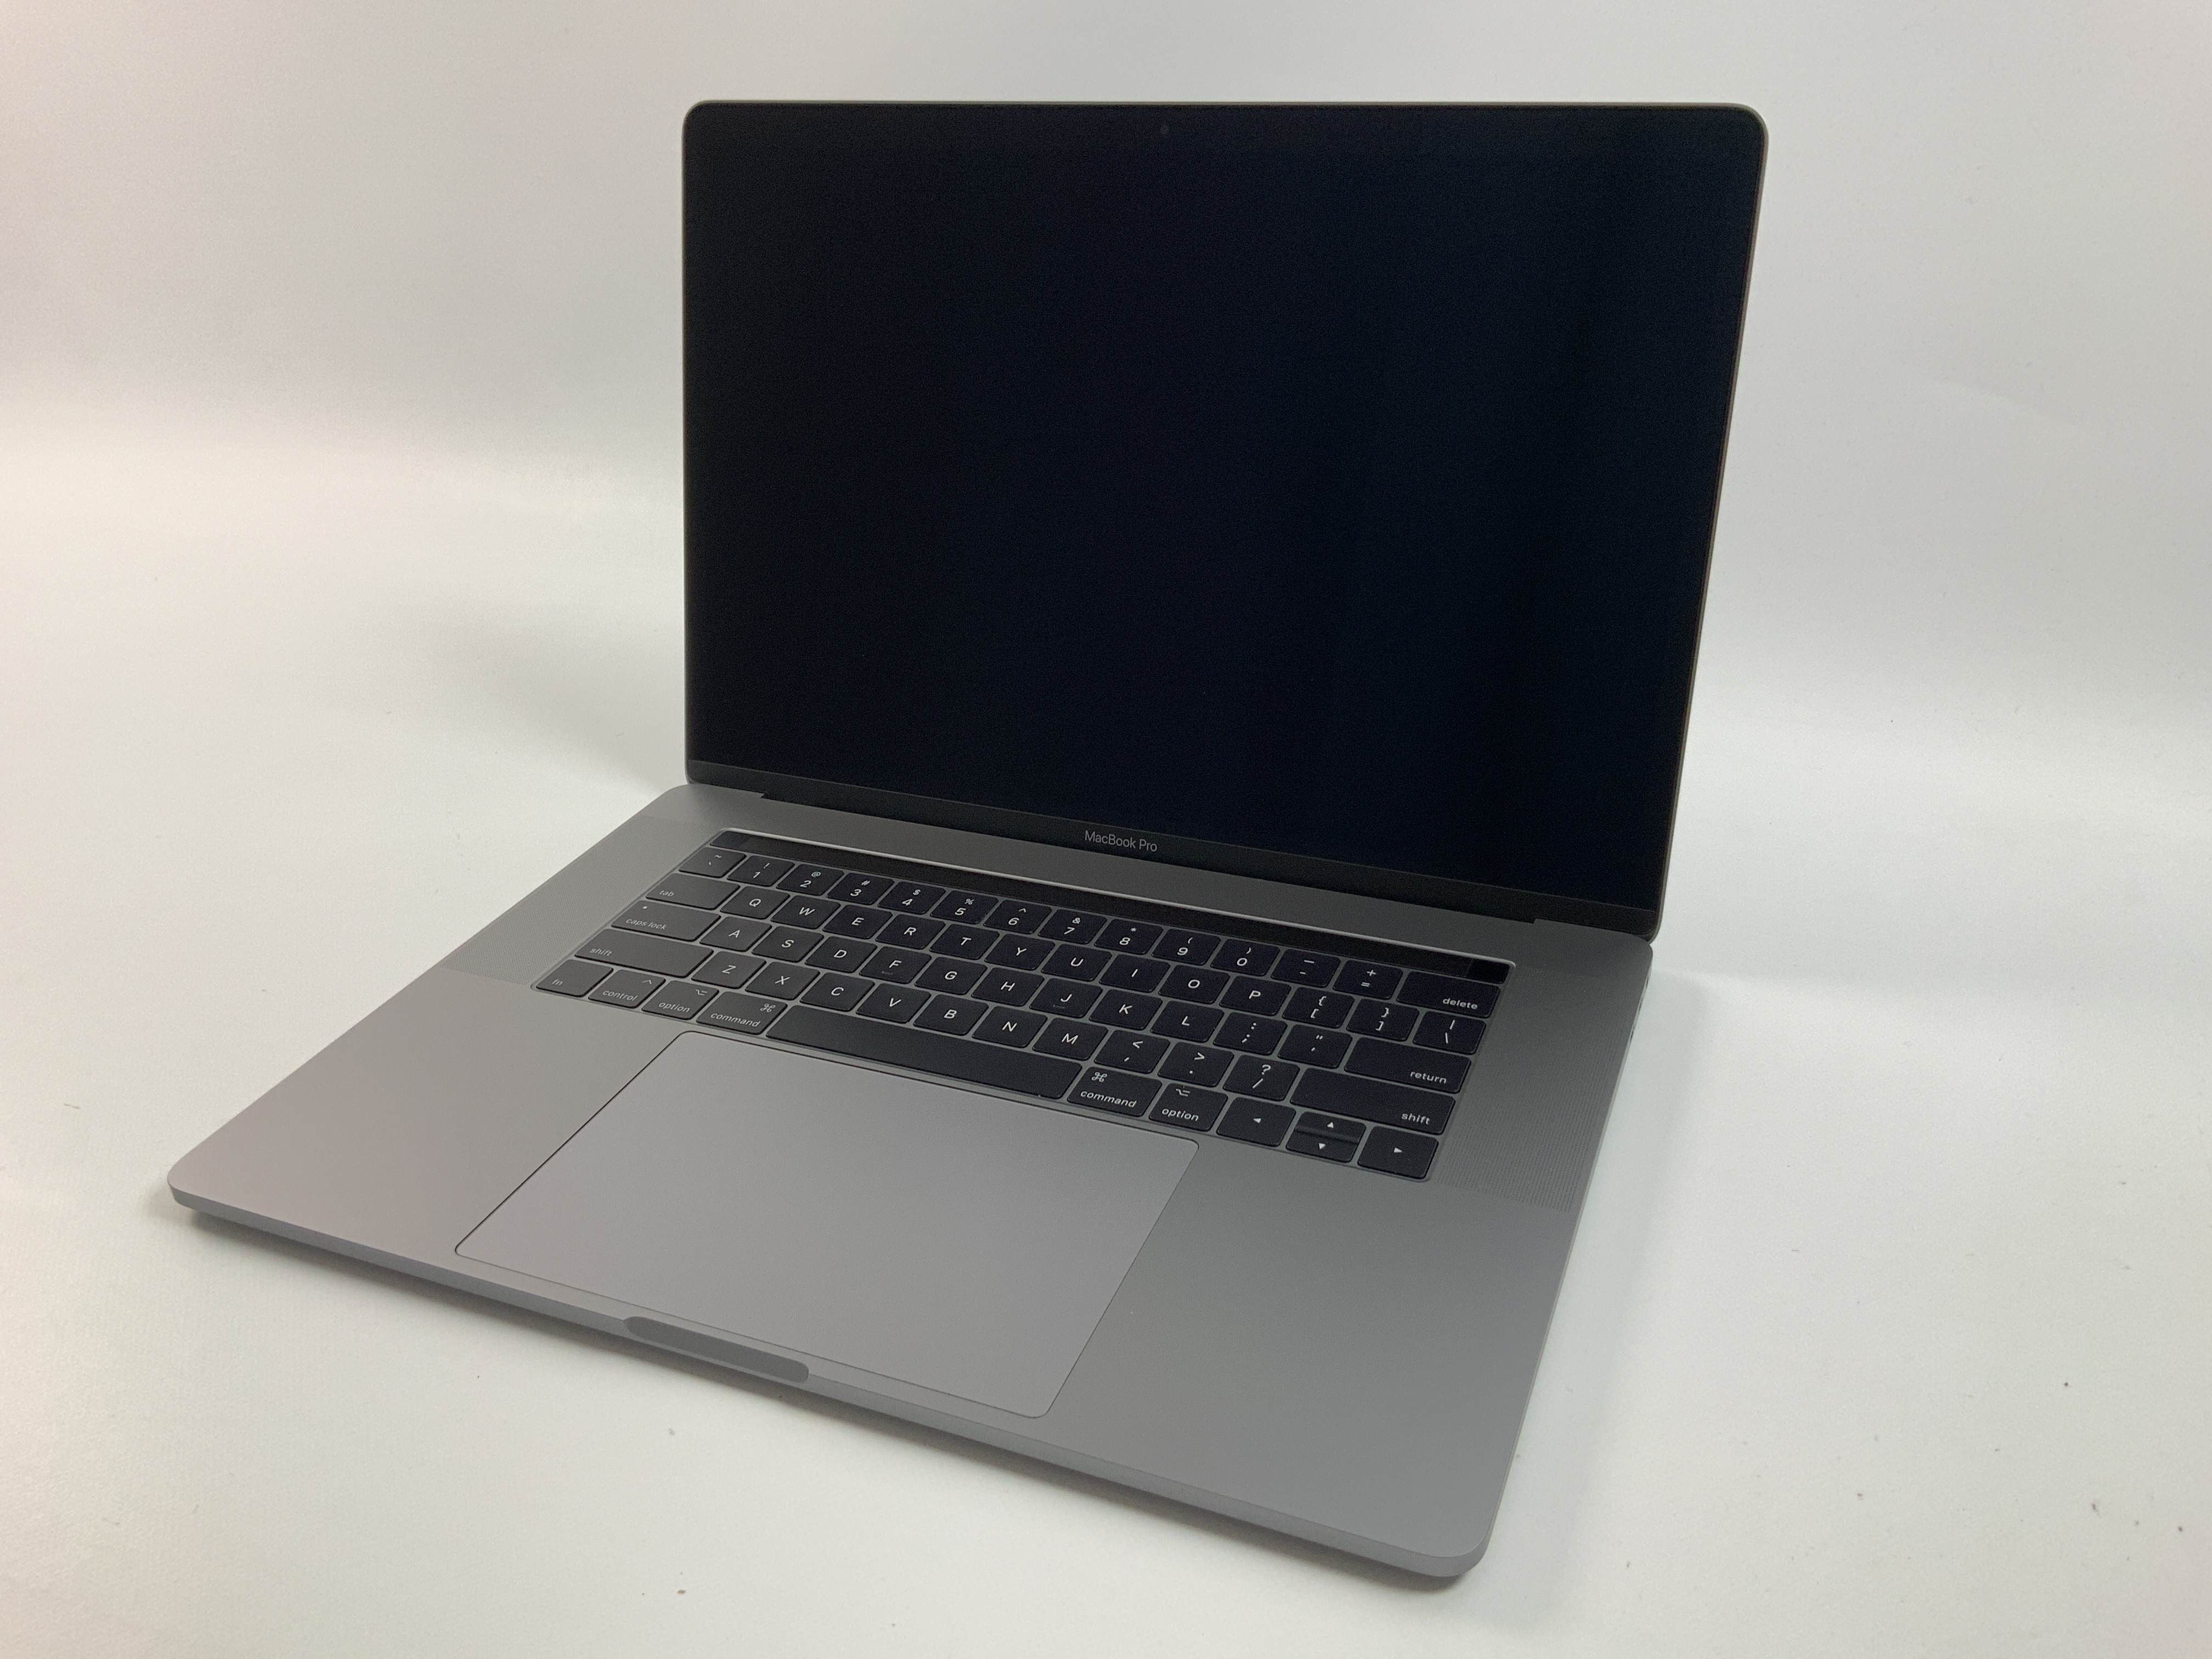 MacBook Pro 15" Touch Bar Mid 2017 (Intel Quad-Core i7 2.8 GHz 16 GB RAM 512 GB SSD), Space Gray, Intel Quad-Core i7 2.8 GHz, 16 GB RAM, 512 GB SSD, Bild 1